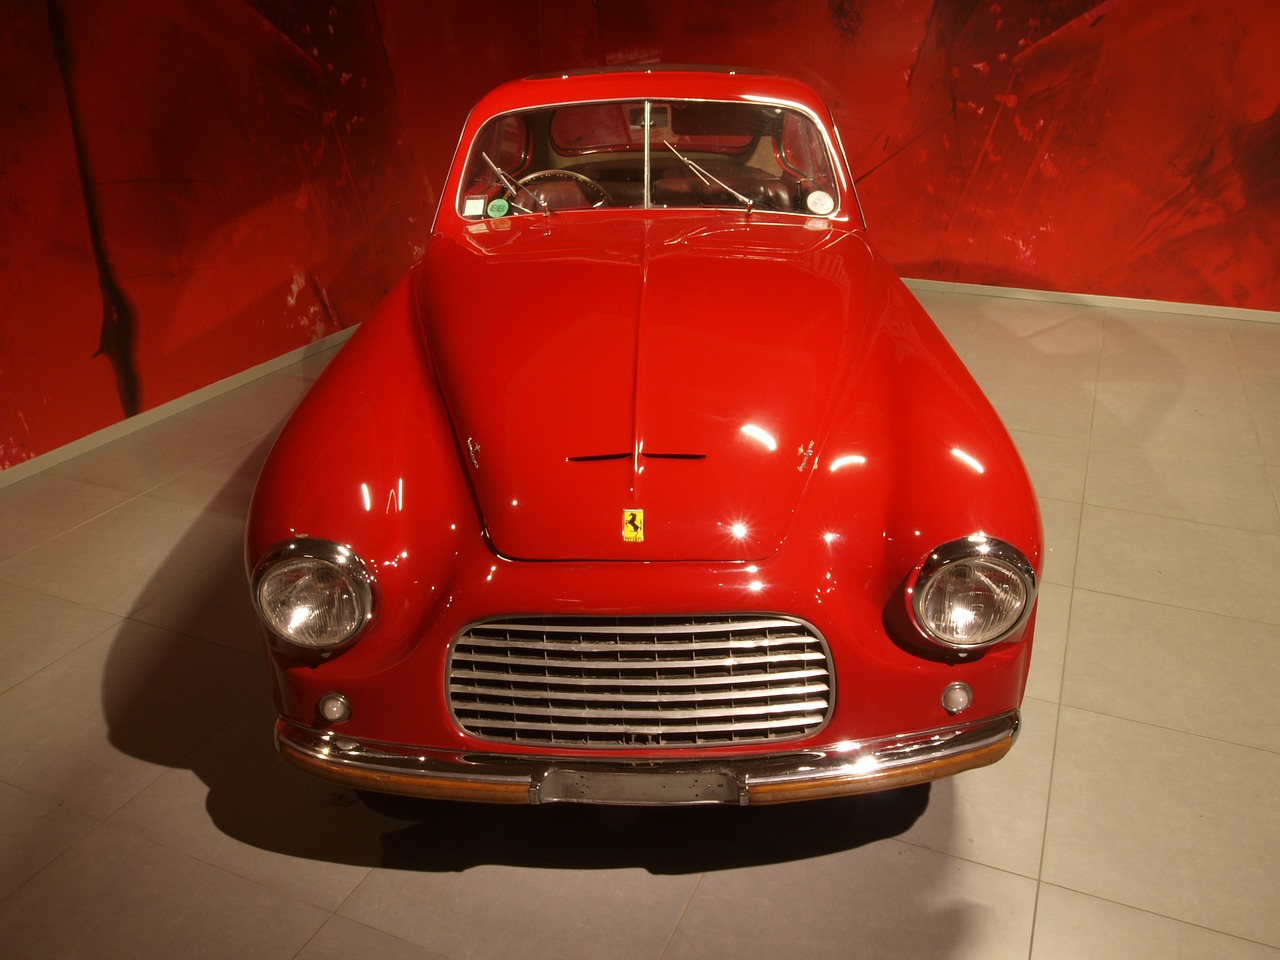 Ferrari Kupė, 1949, Automobilis, Automobilis, Variklis, Vidaus Degimas, Transporto Priemonė, Motorinė Transporto Priemonė, Mašina, Automobilis